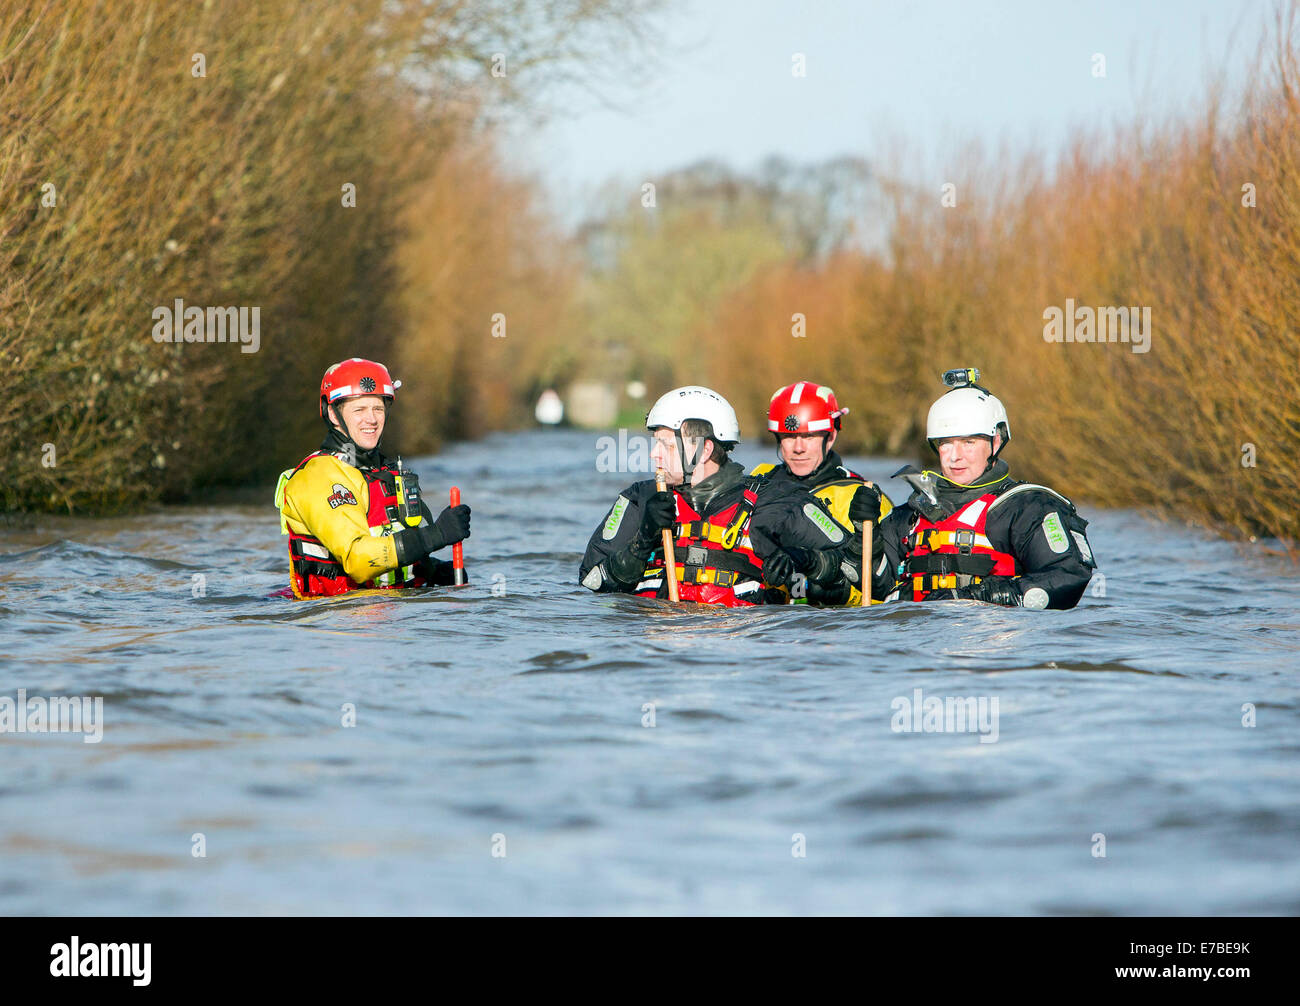 Fire e ambulanza equipaggi di pattuglia attraverso le acque di esondazione vicino a nord di Curry, Somerset. Foto Stock